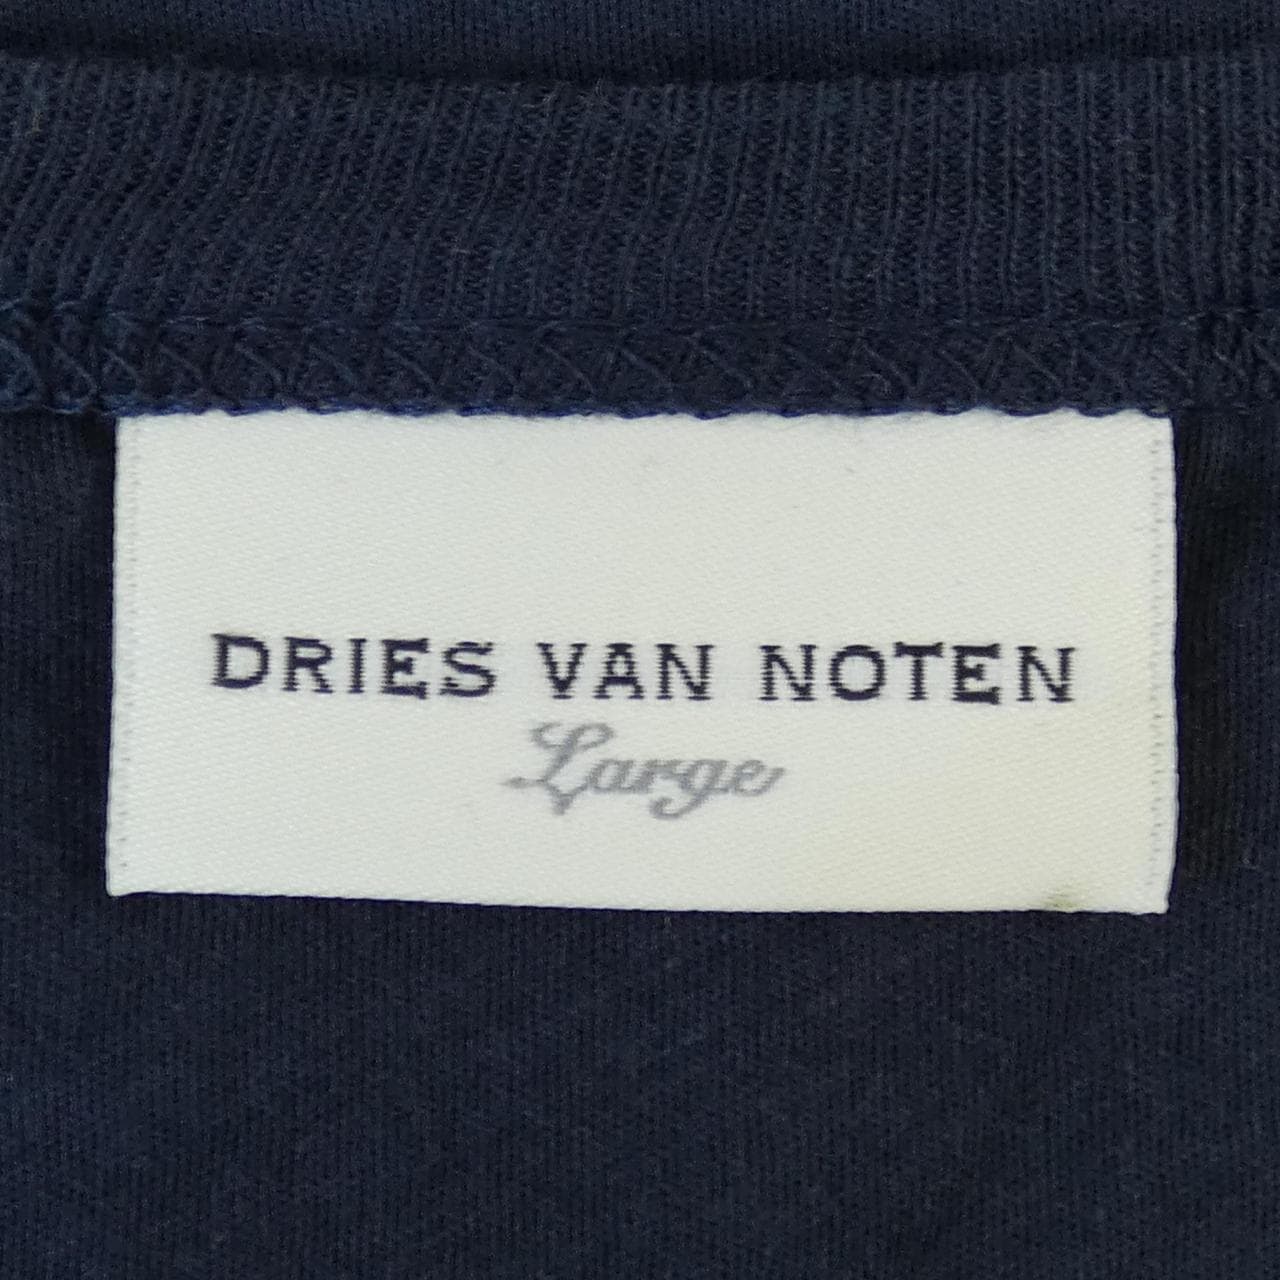 DRIES VAN NOTEN德赖斯·范诺顿 (Dries Van Noten) 上衣